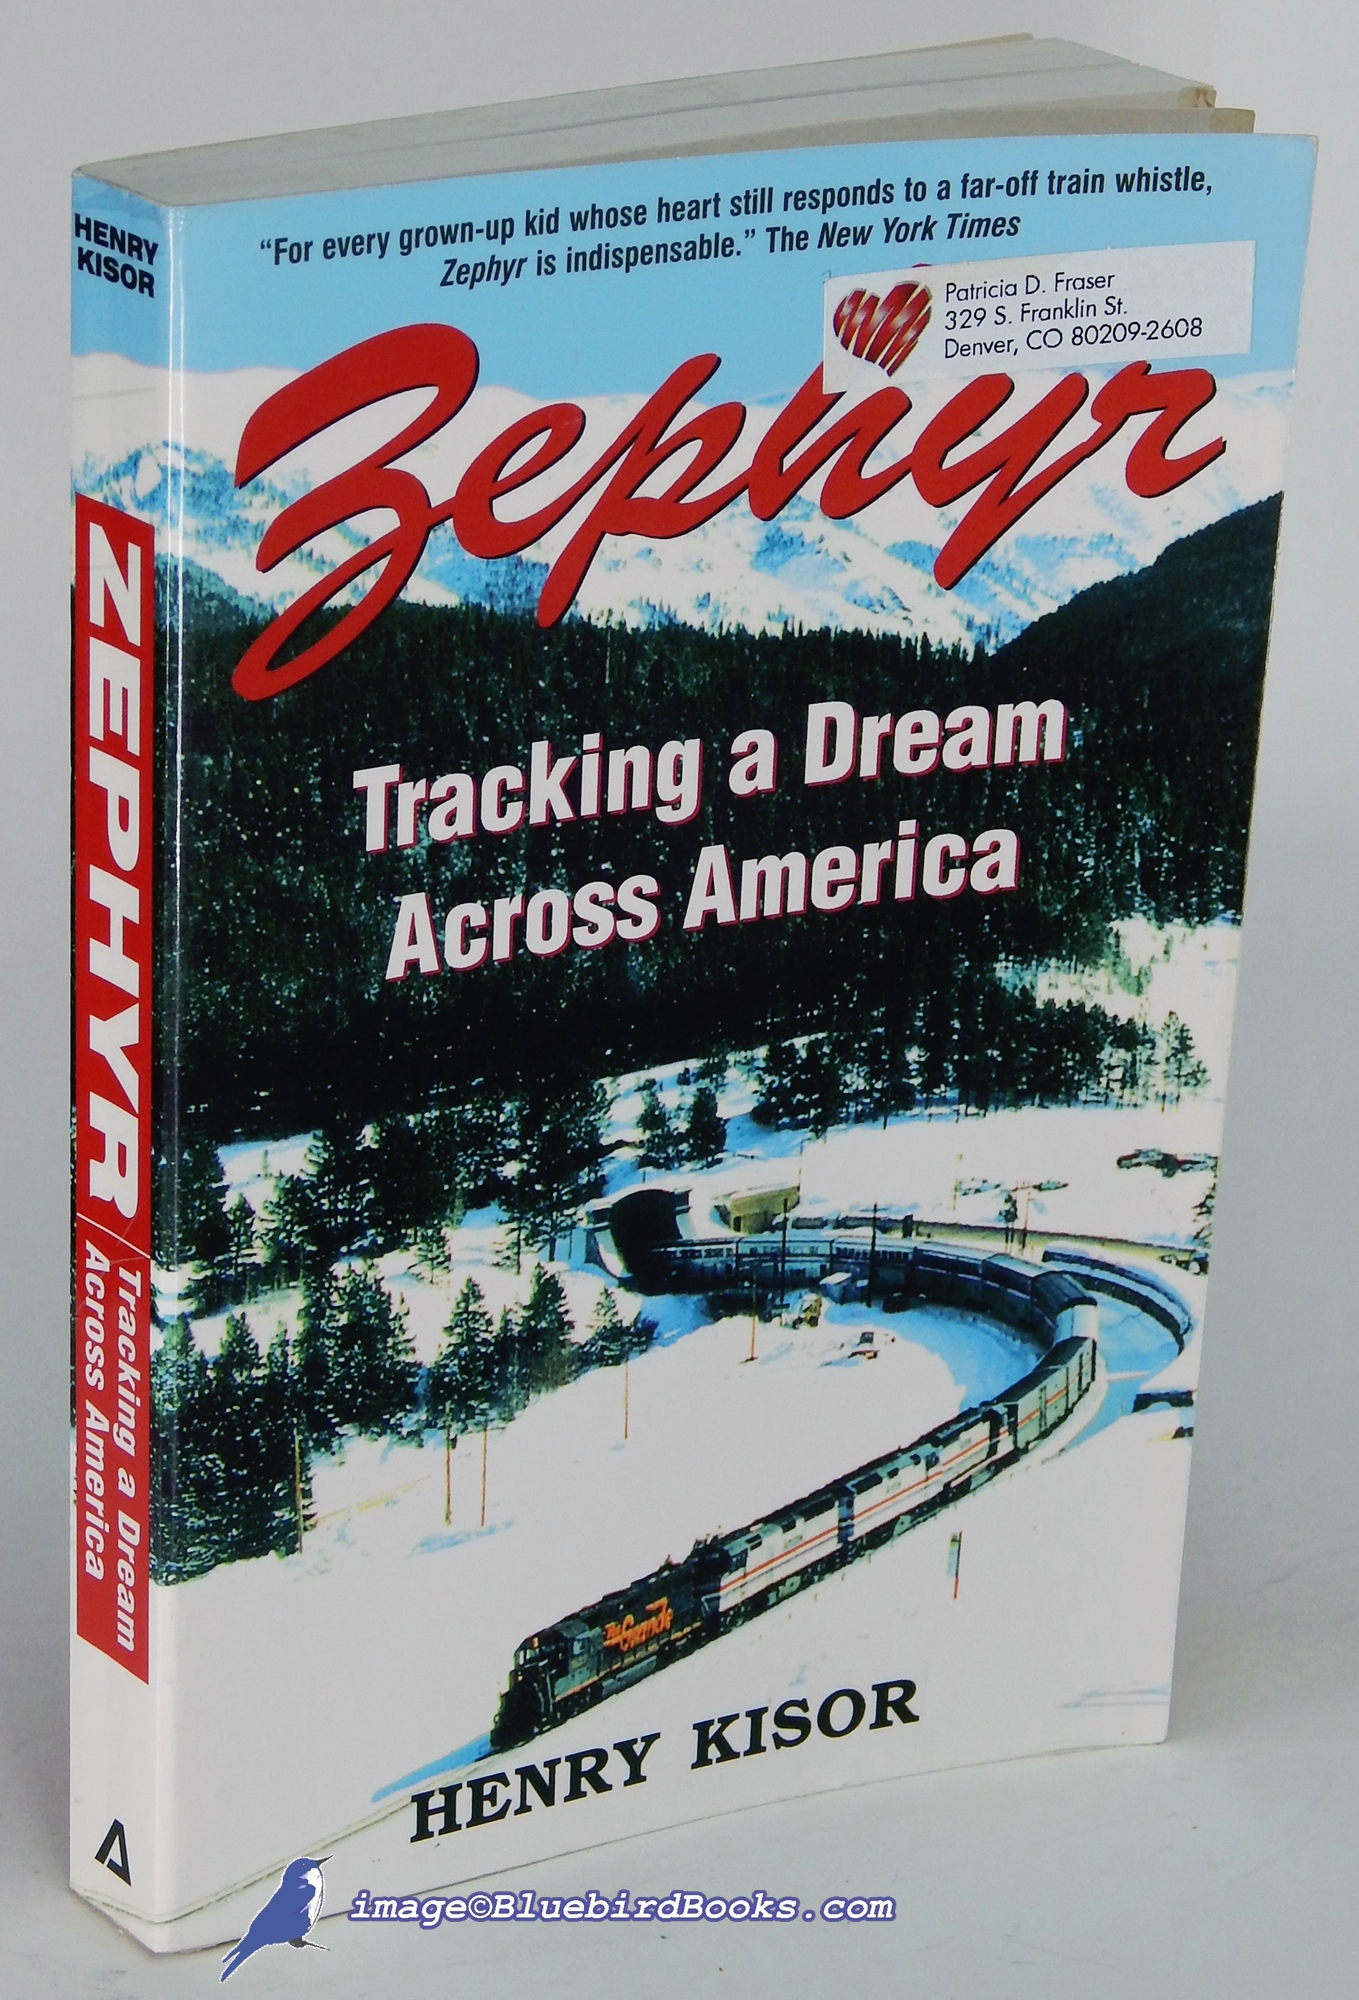 KISOR, HENRY - Zephyr: Tracking a Dream Across America